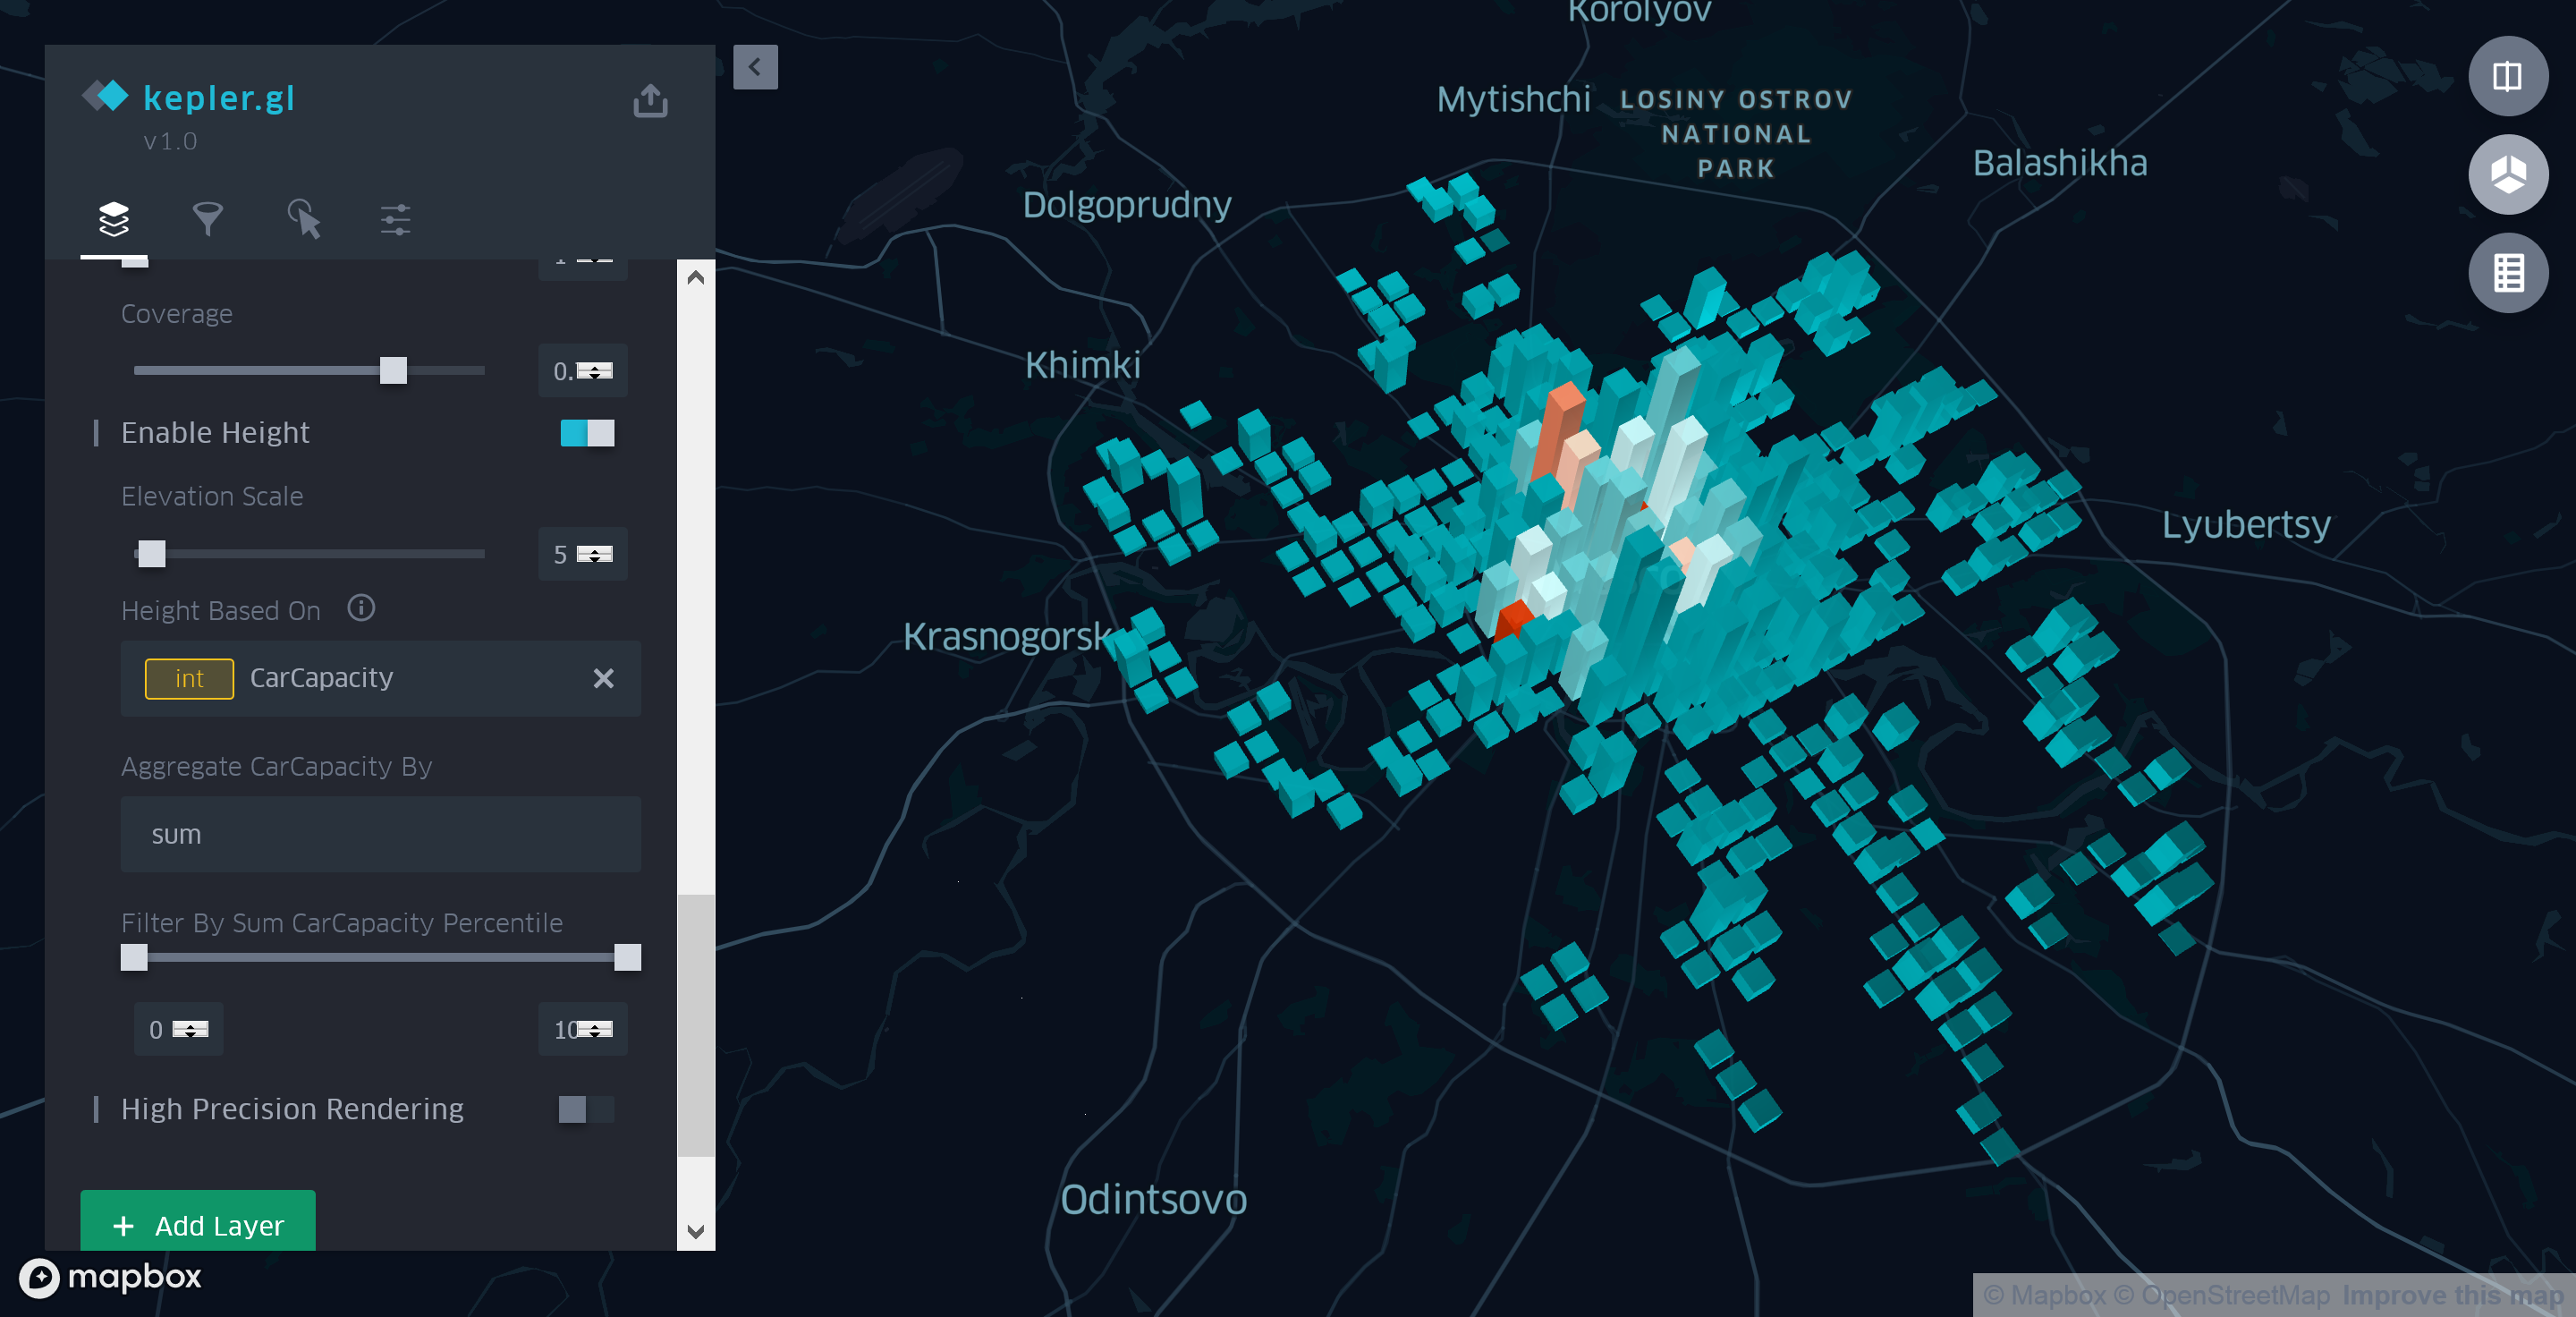 Как создать карту московских парковок с помощью Kepler.gl - 7